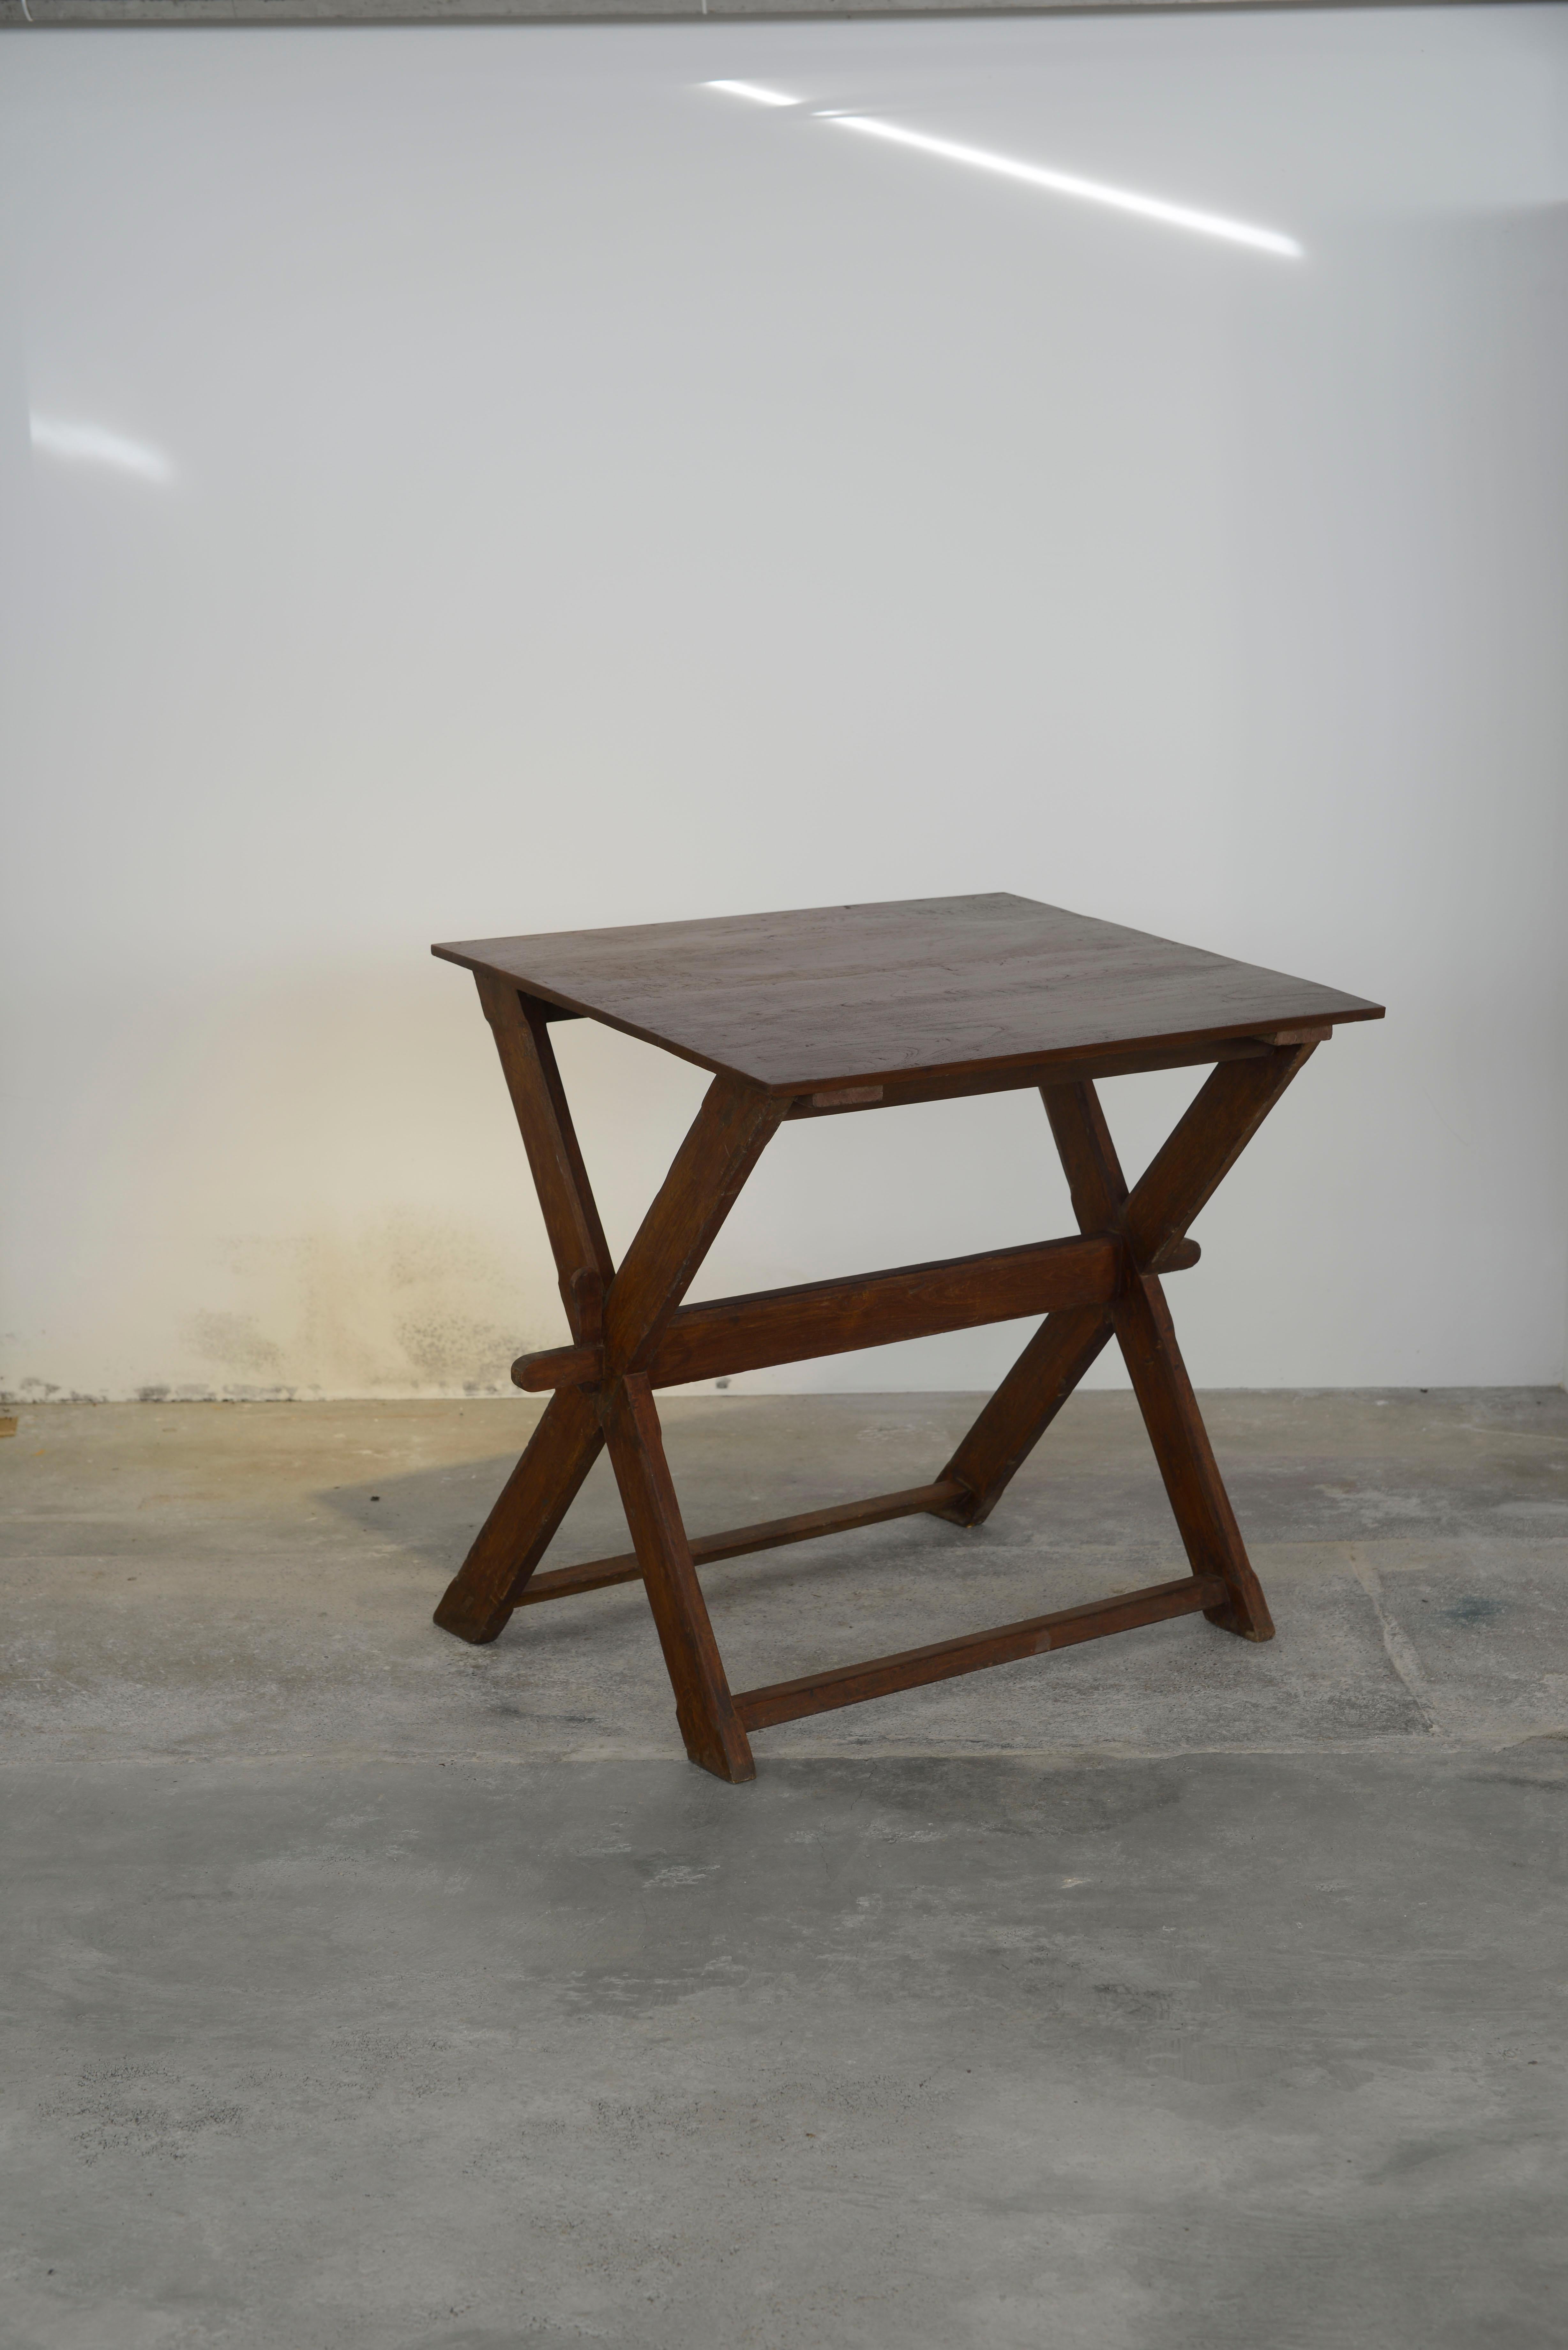 Dieser Tisch ist ein ikonisches Designobjekt. Es ist roh in seiner Einfachheit zeigt es eine leicht patinierte Material. Die Form ist schön zerbrechlich und hat eine wunderbare Farbe. Wir restaurieren sie nicht allzu sehr. So bewahren wir so viel